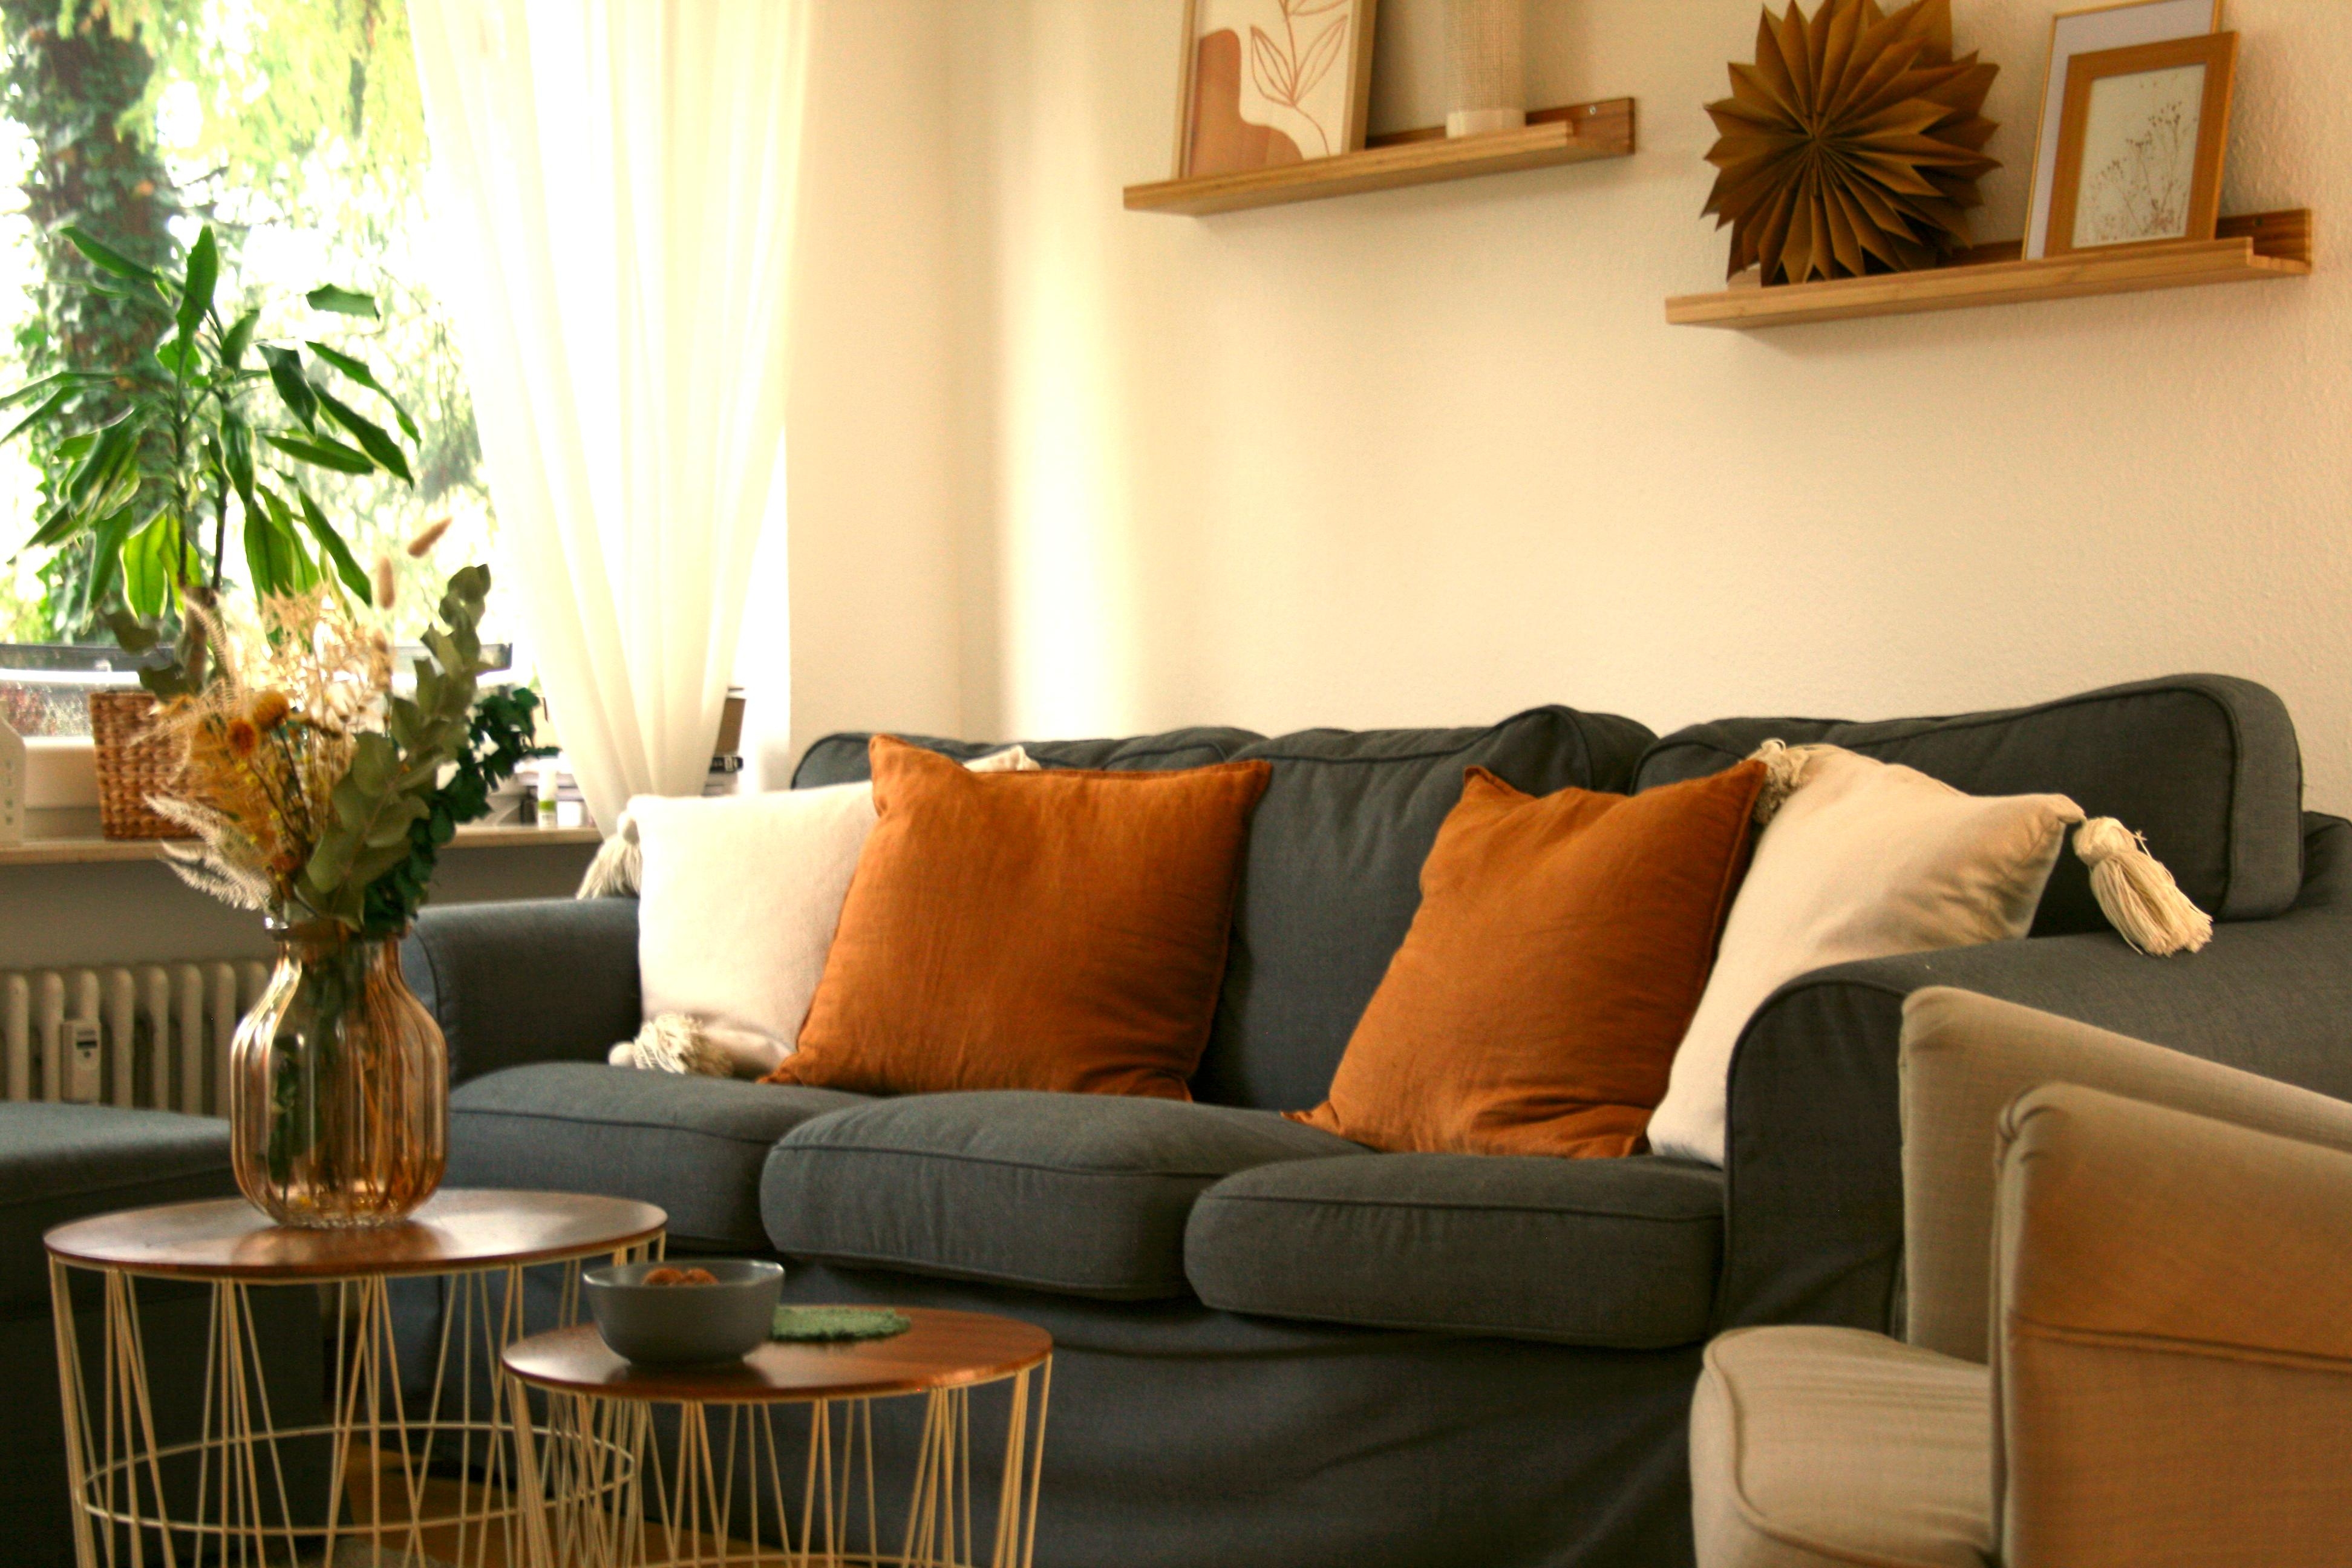 #wohnzimmer#skandi#couch 
#trockenblumen#gemütlich